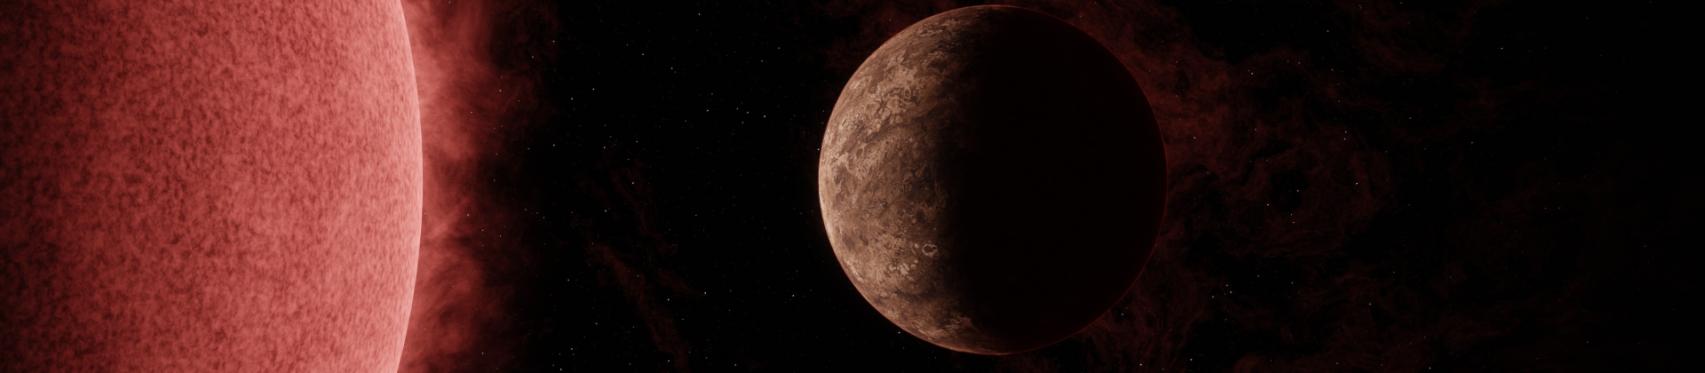 Representación artística del exoplaneta SPECULOOS-3 b en órbita alrededor de su estrella enana roja. El planeta es tan grande como la Tierra, mientras que su estrella es ligeramente mayor que Júpiter, pero mucho más masiva. Crédito: NASA/JPL-Caltech